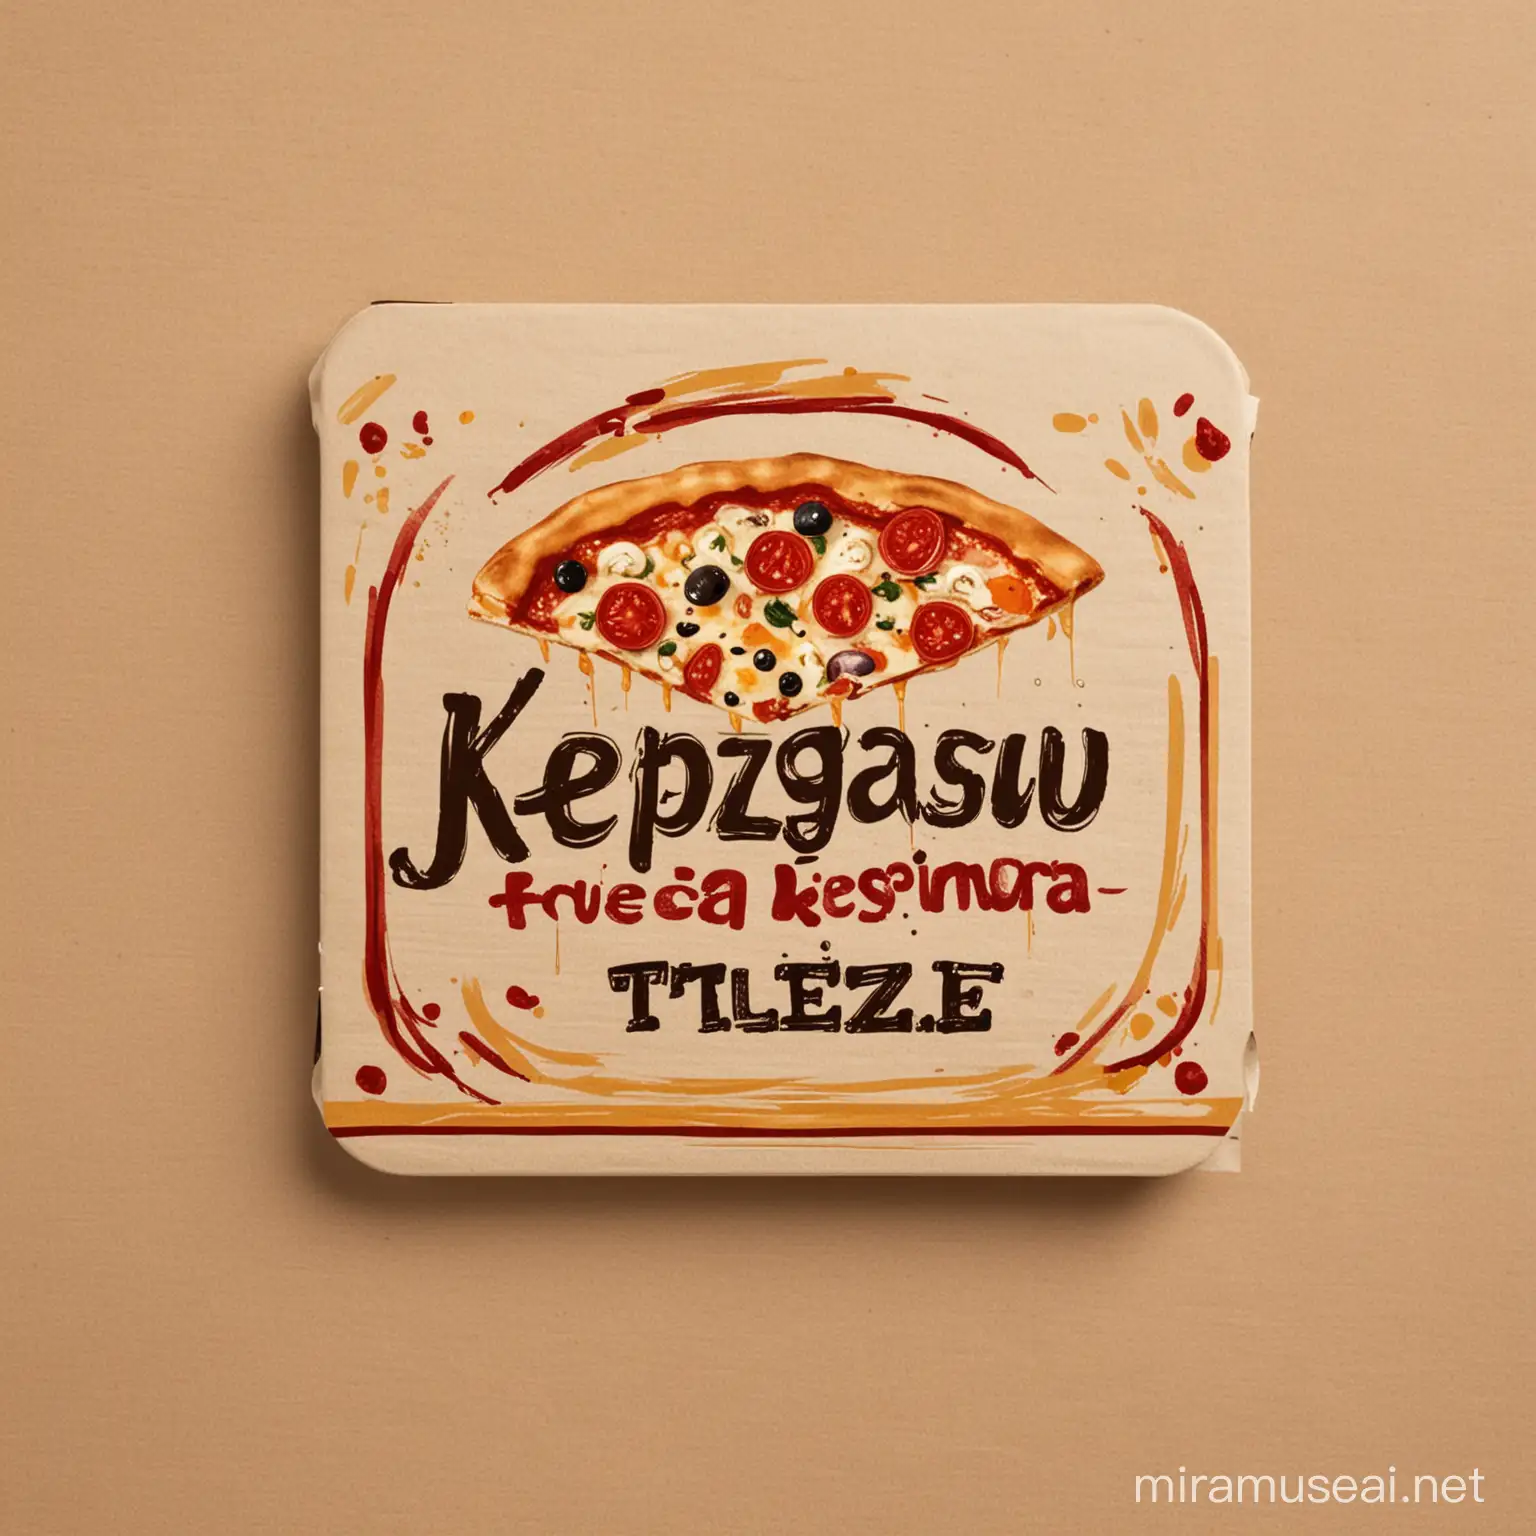 Forme rectangulaire pour étiquette sur une boîte de pizza avec titre '' kpedzigaou ''